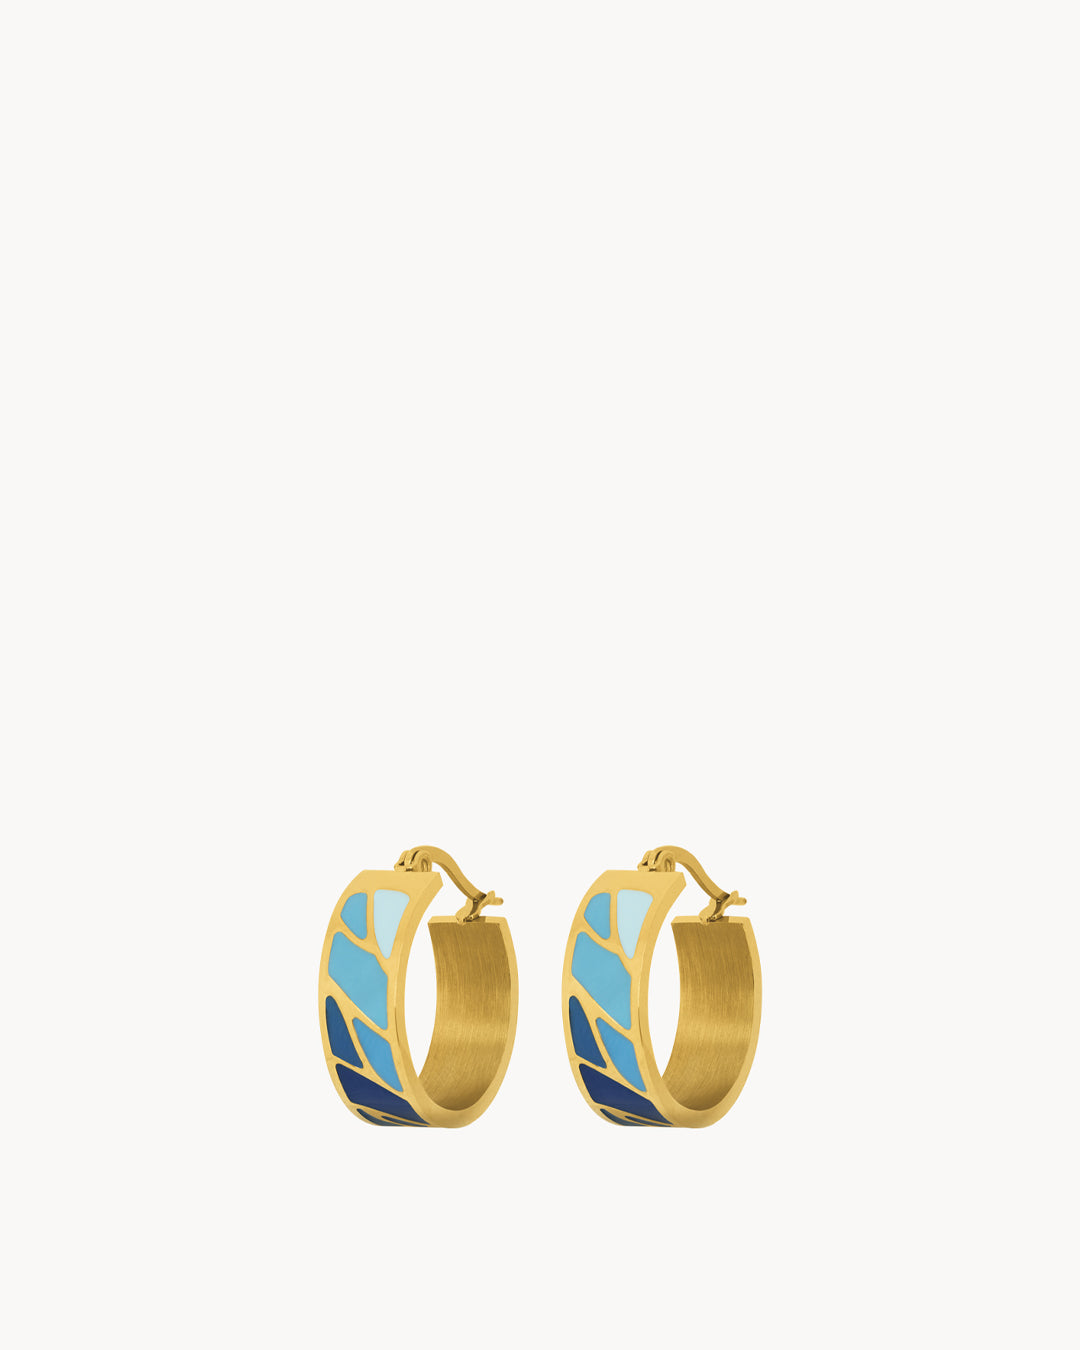 Μπλε σκουλαρίκια κρίκου Grotto, χρυσό